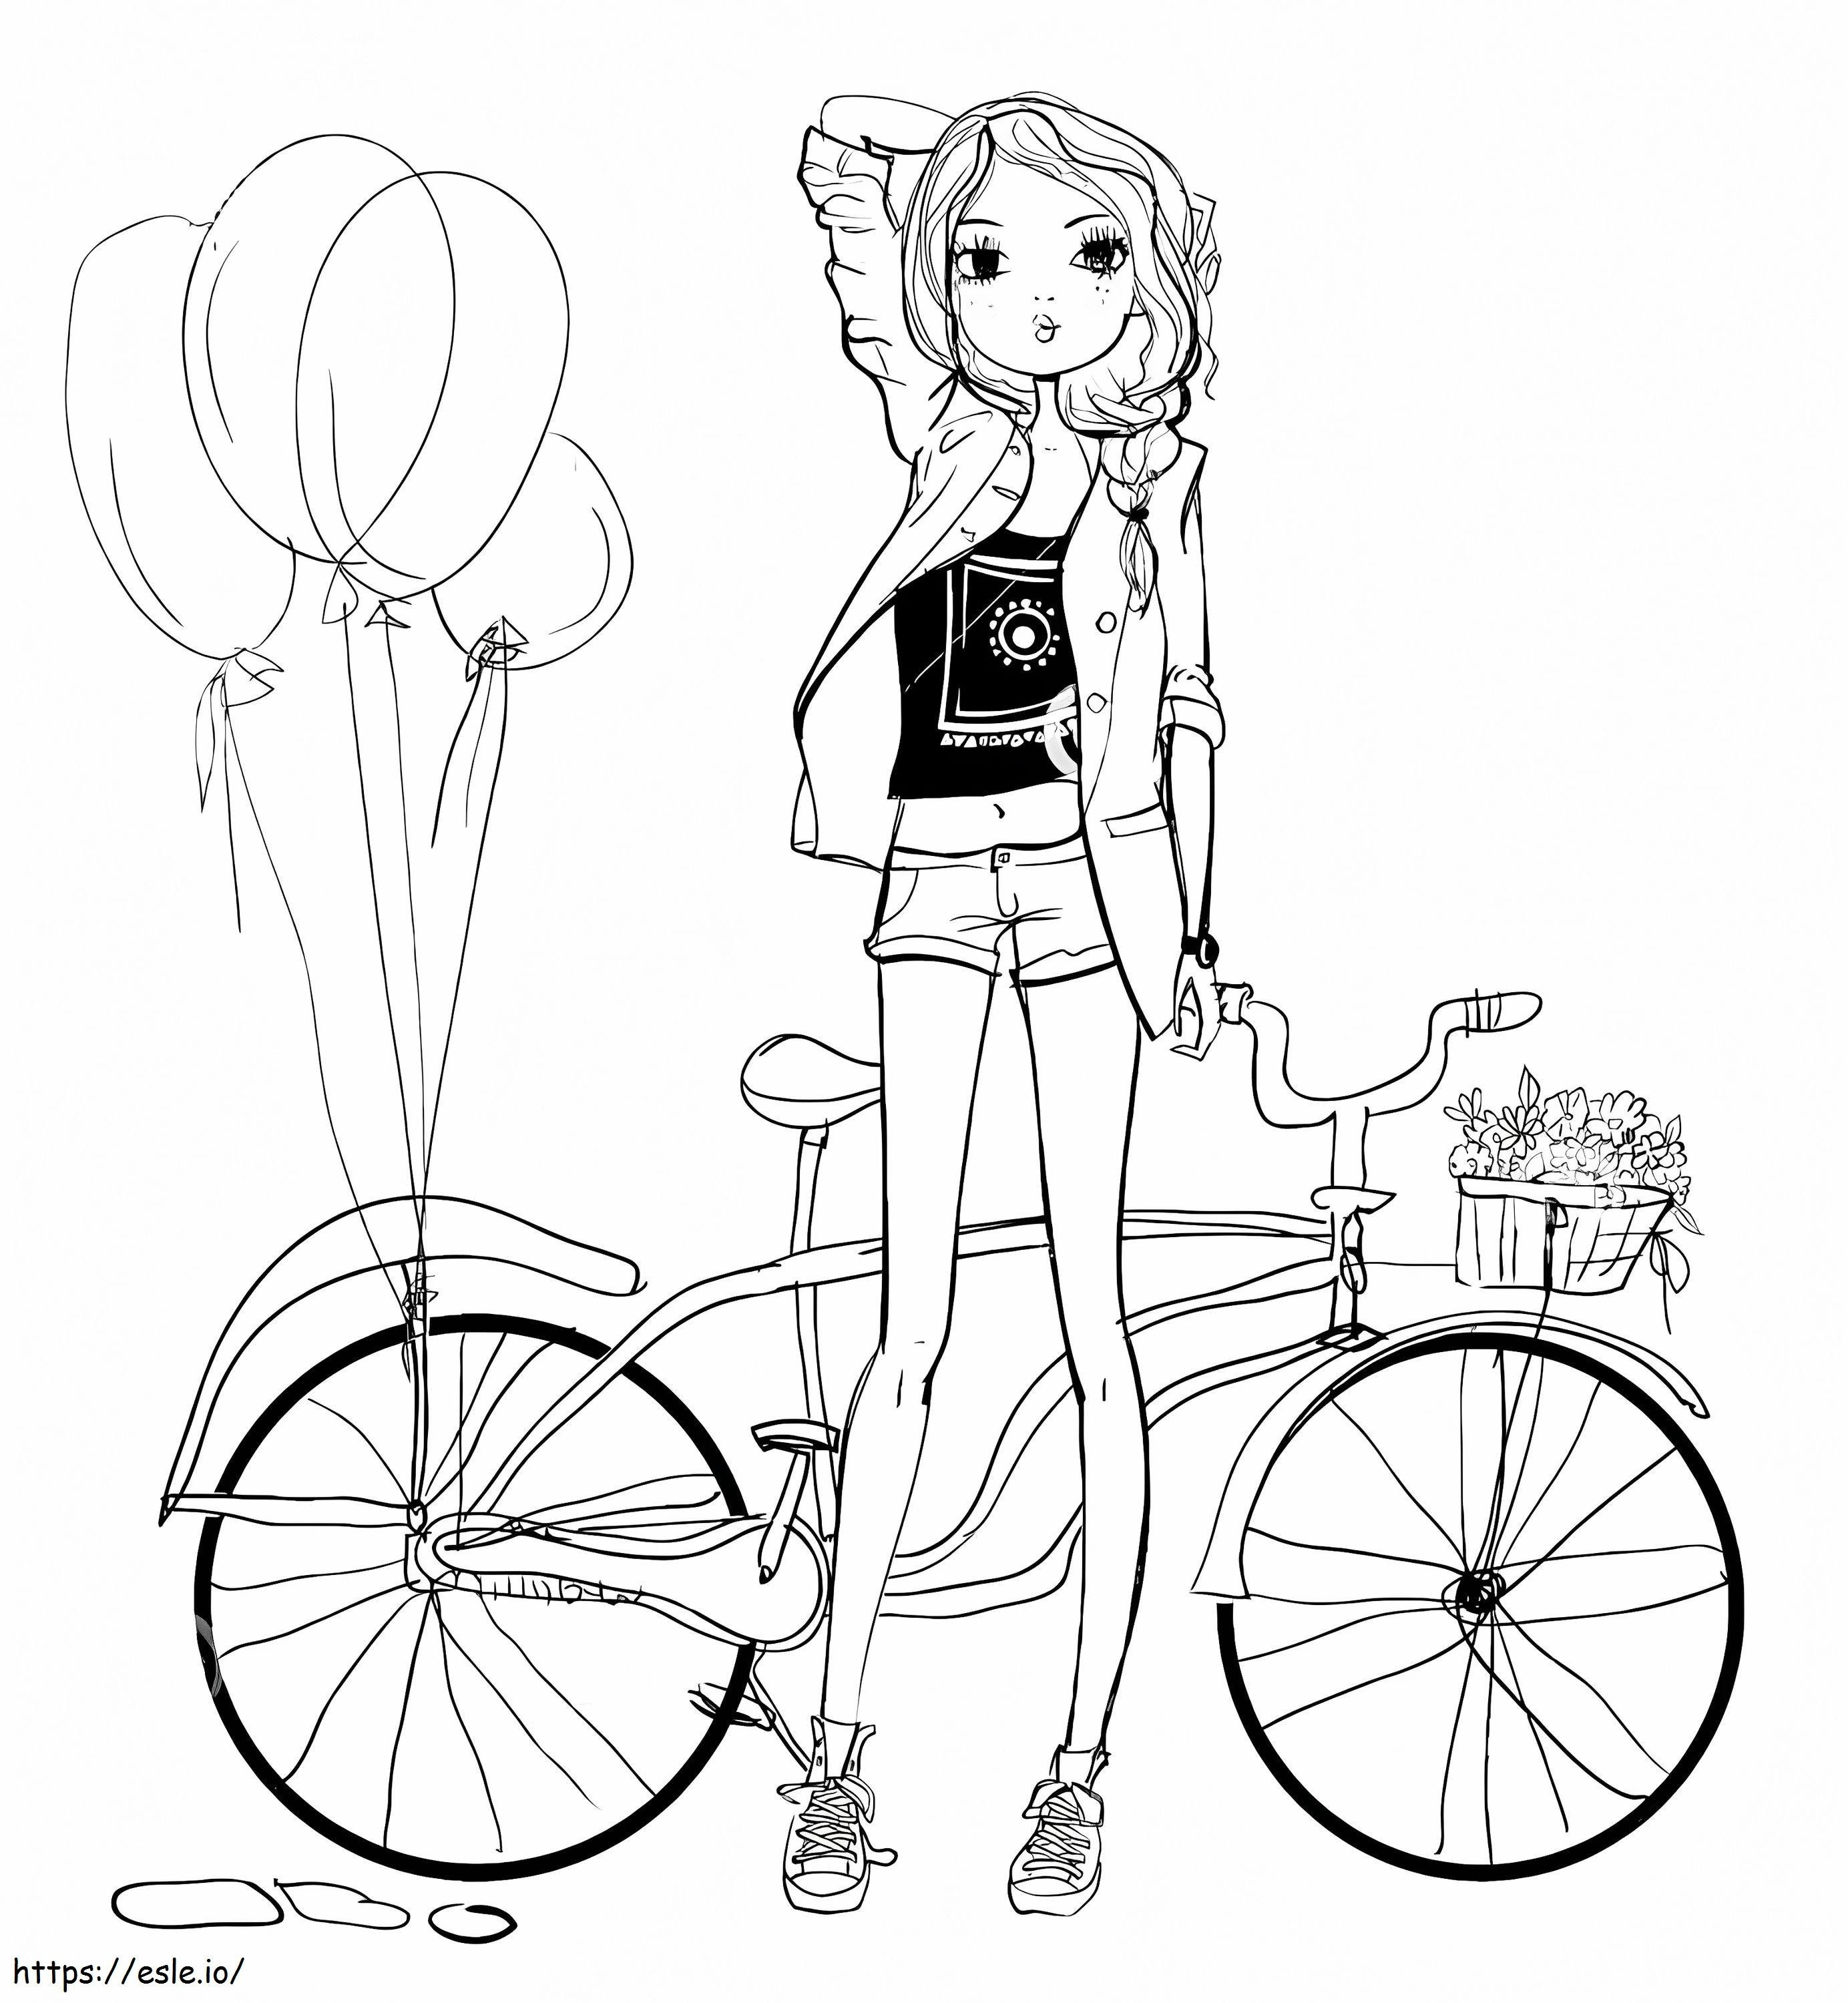 Dibujo de niña y bicicleta para colorear